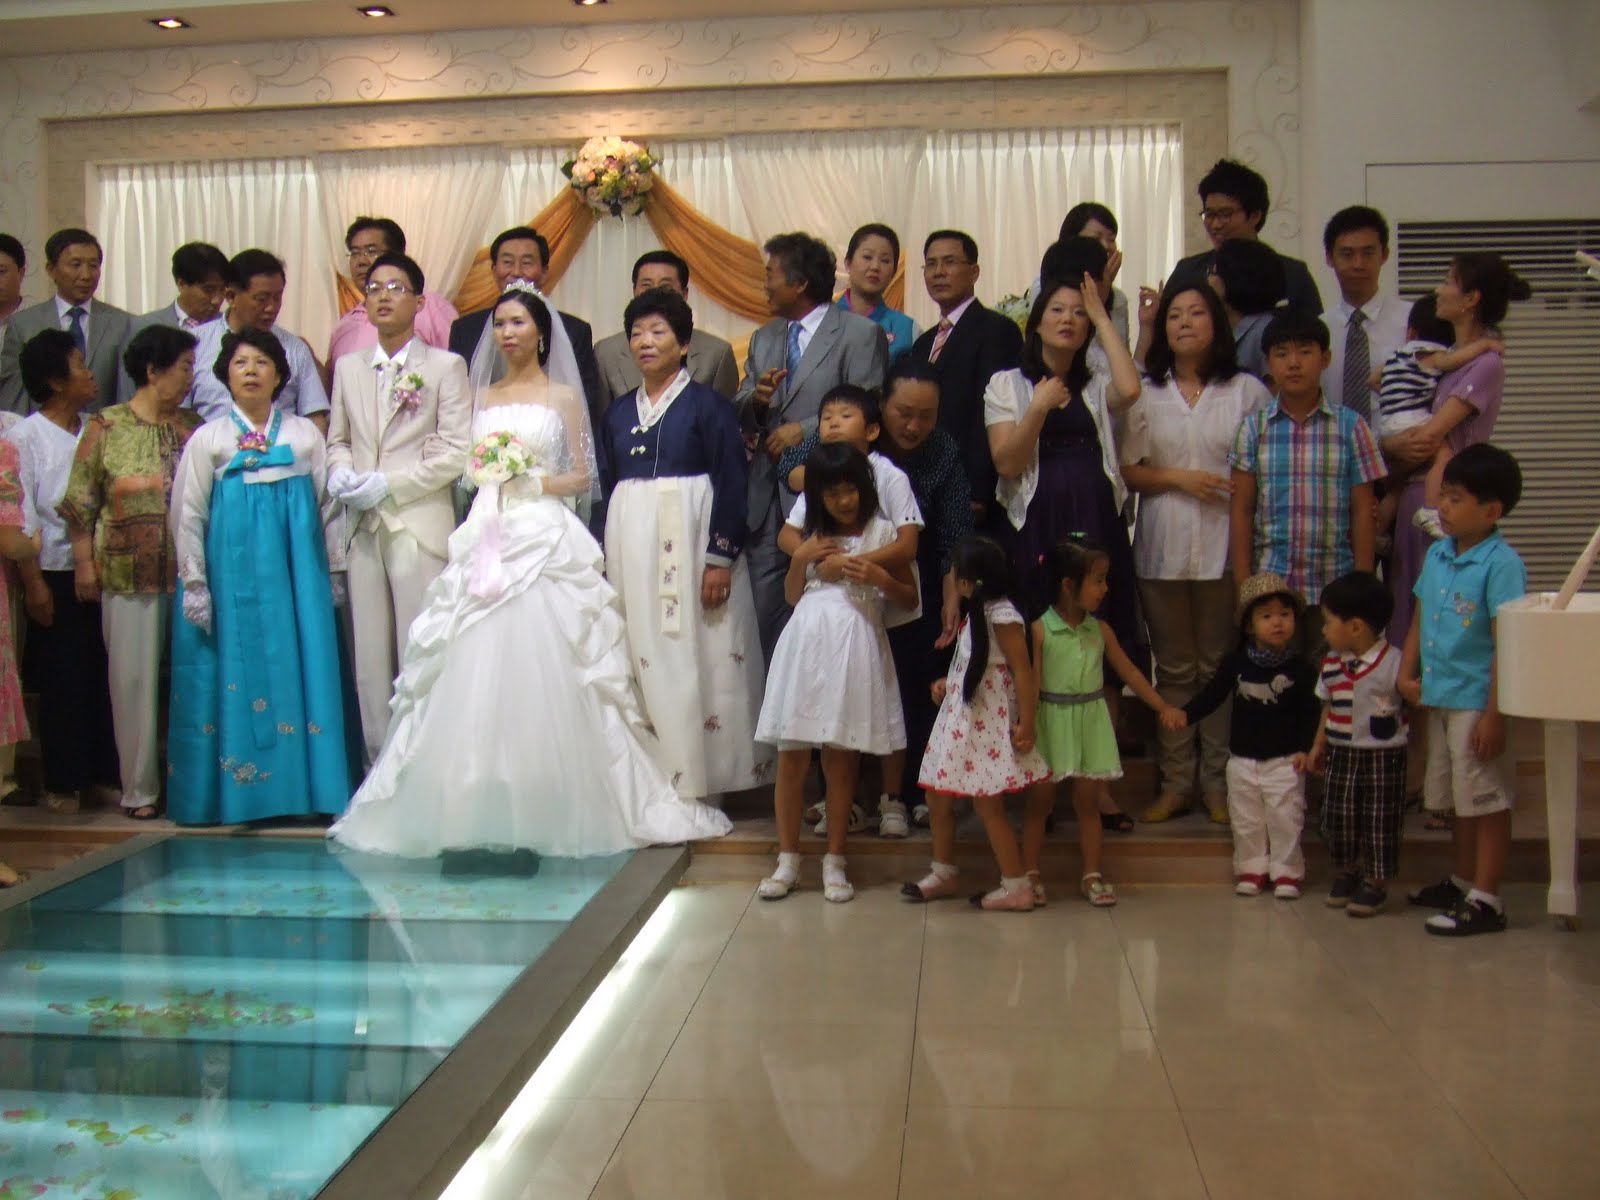 Nghề đóng giả làm khách mời tới dự đám cưới vốn xuất hiện ở Hàn Quốc từ đầu những năm 2000.